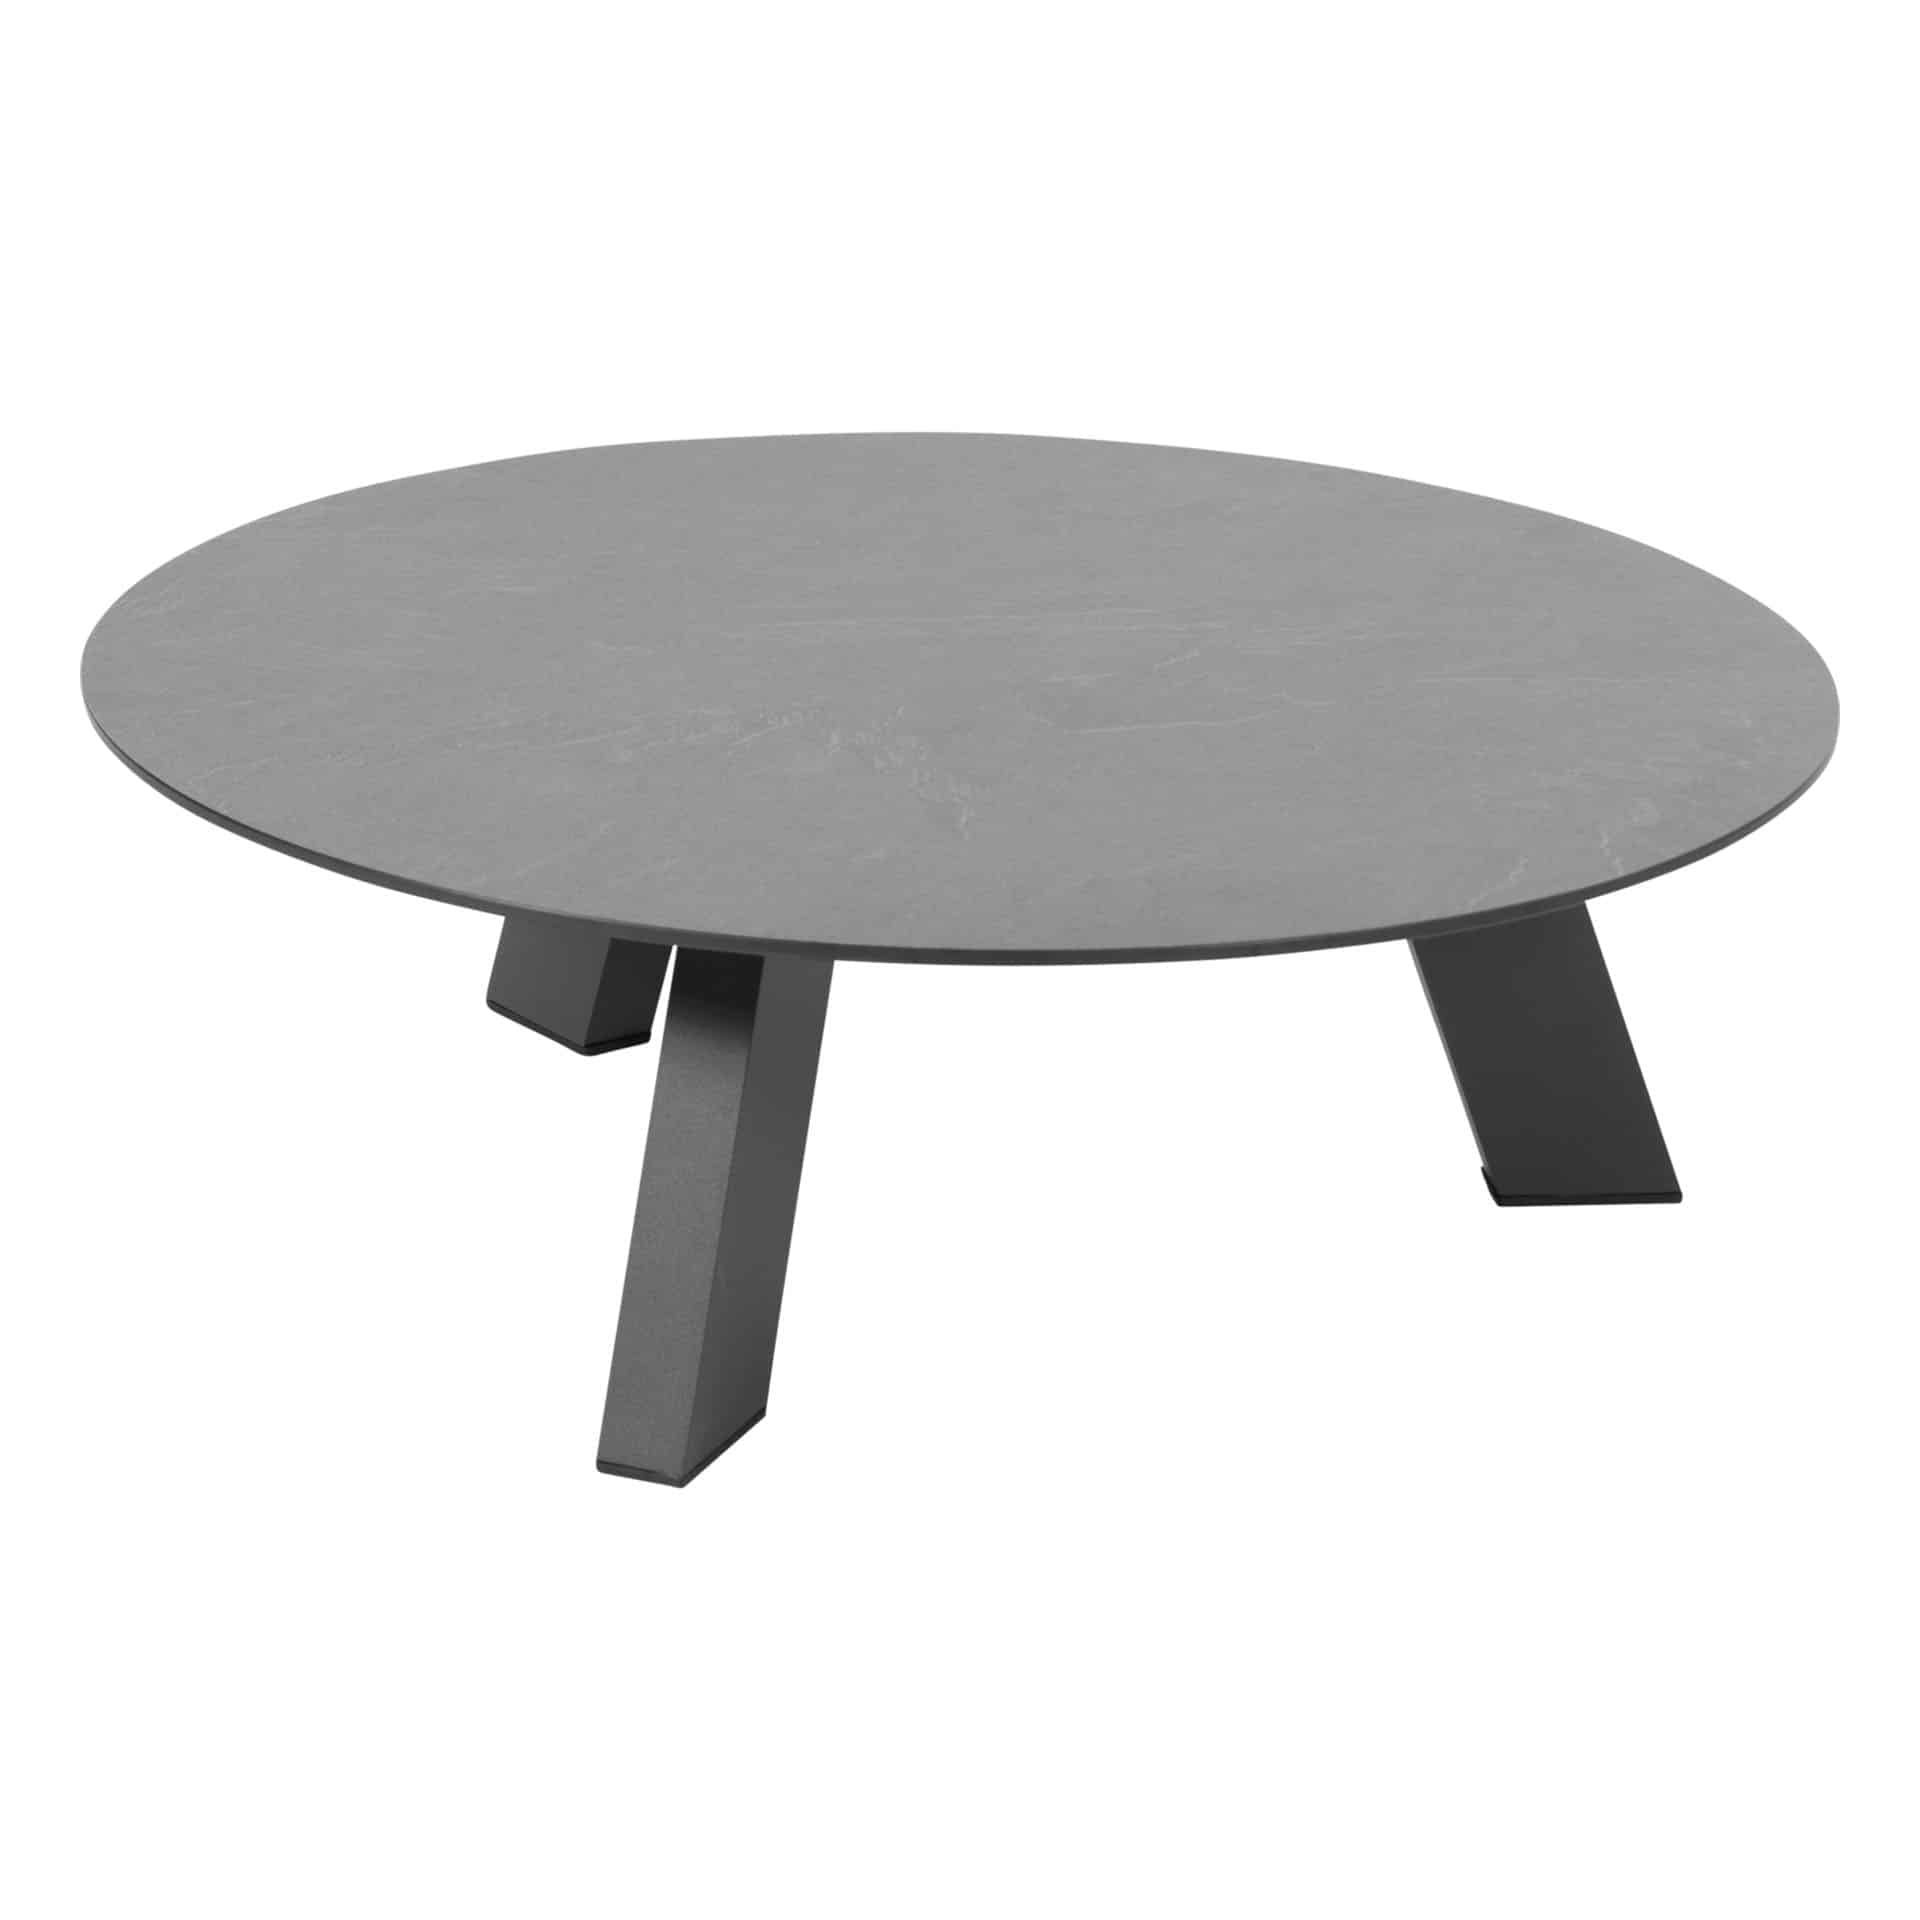 4 Seasons Outdoor Cosmic ronde(ø78) salontafel met slate antraciet HPL tafelblad en antraciet aluminium frame.